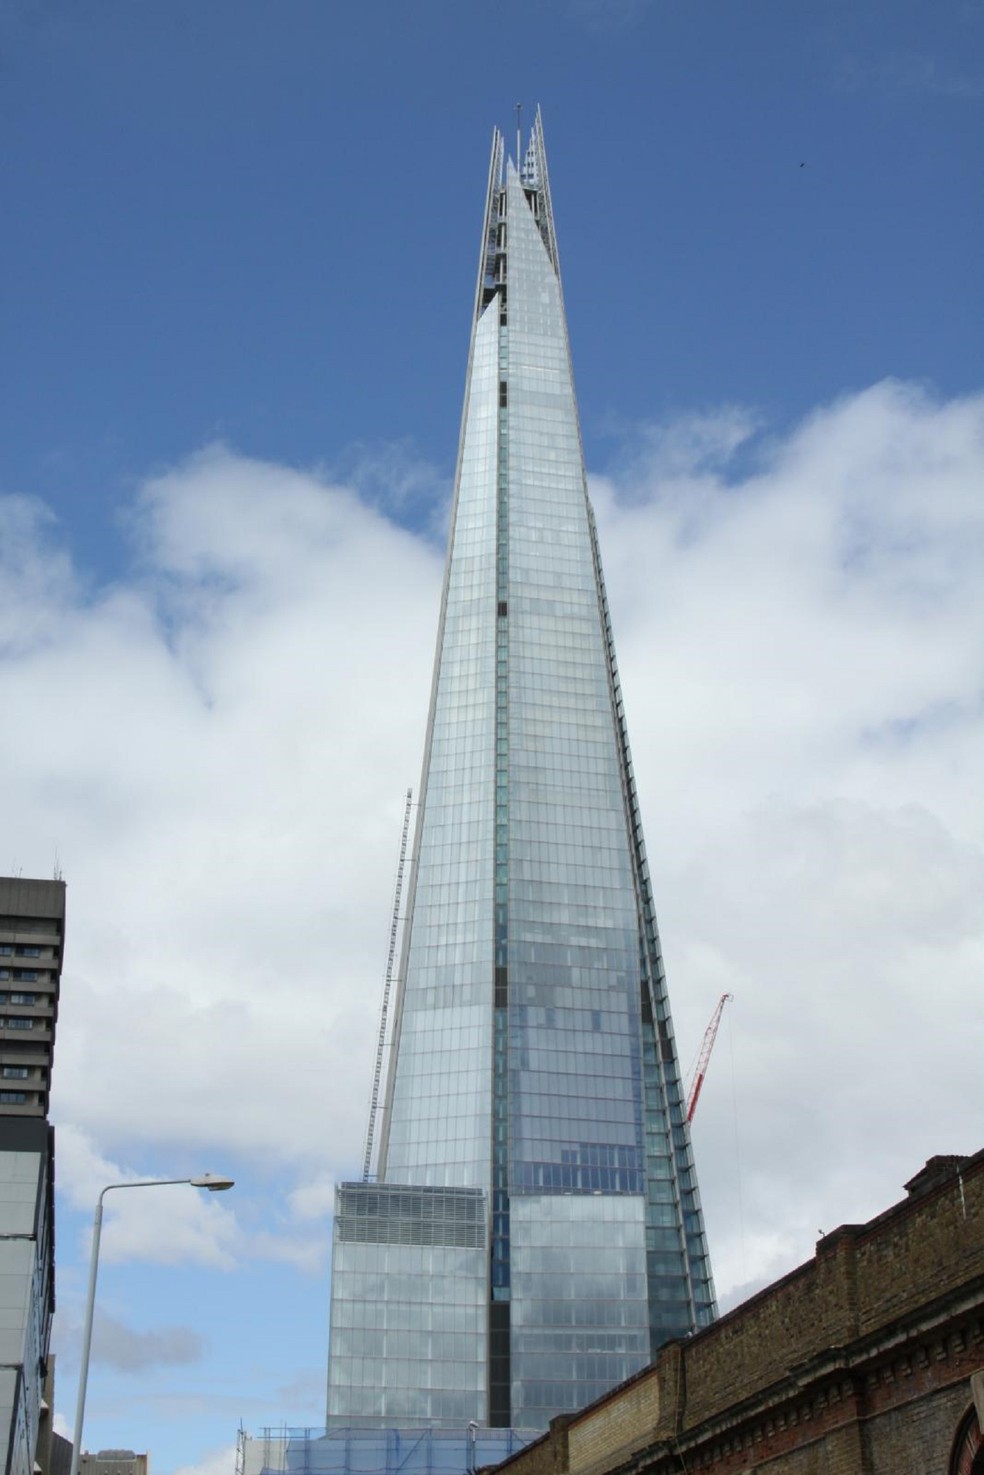 Localizado em Londres, o arranha-céu é considerado um dos mais famosos de Renzo Piano — Foto: Dave Catchpole / Wikimedia Commons